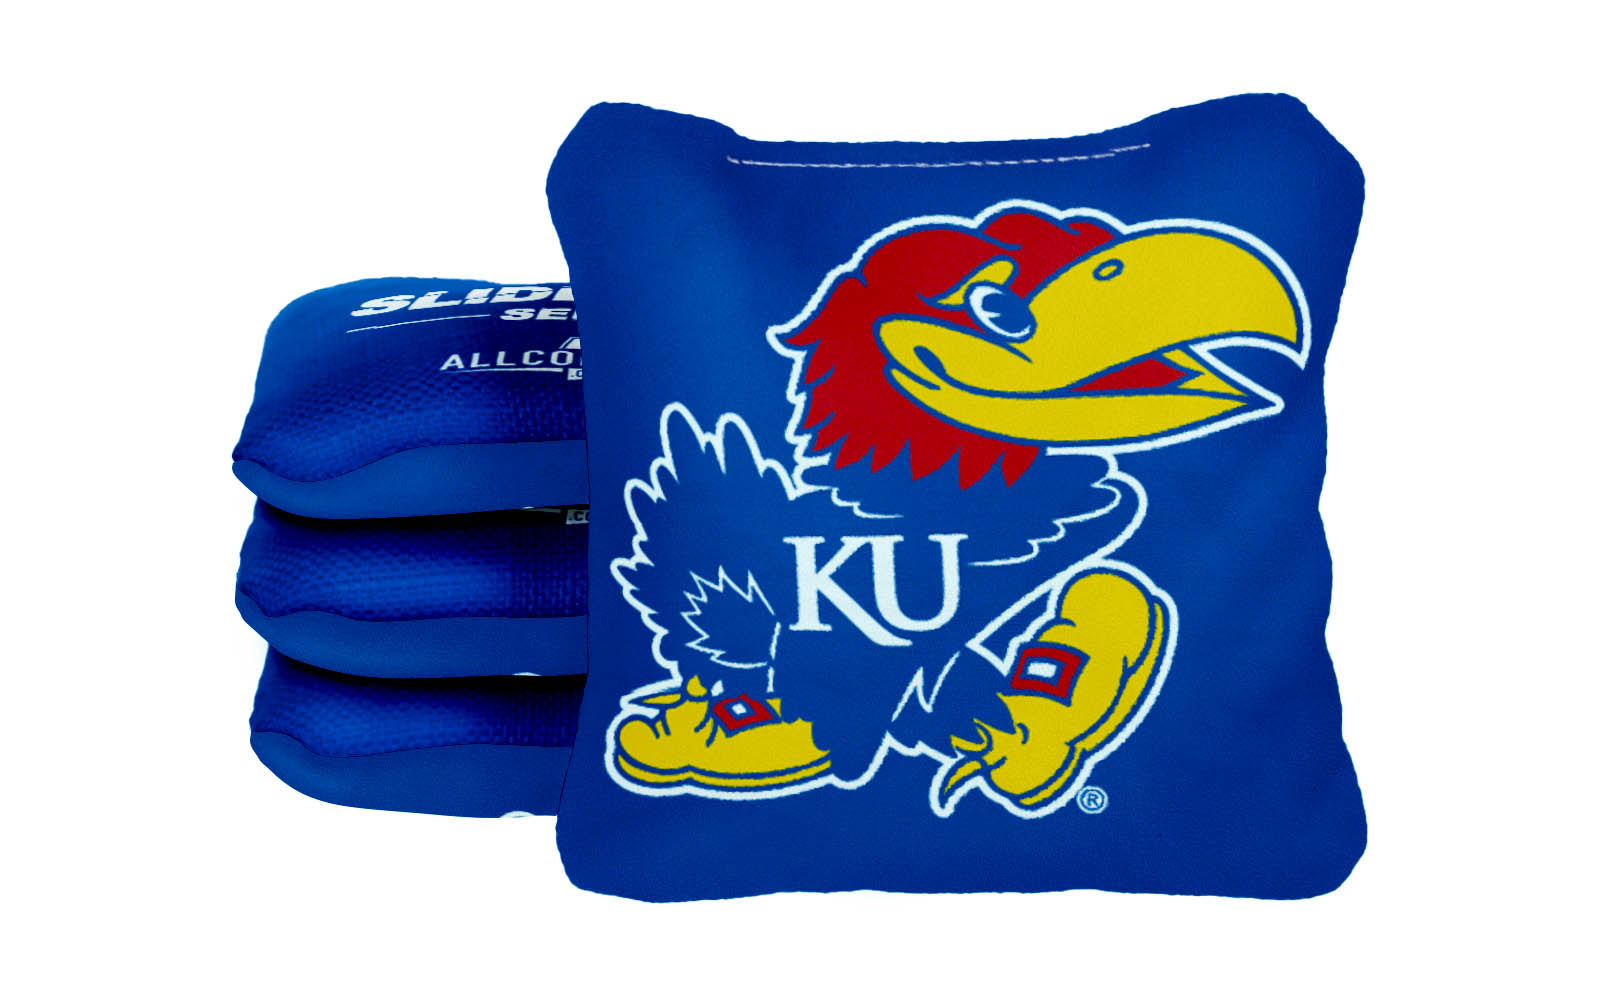 Officially Licensed Collegiate Cornhole Bags - Slide Rite - Set of 4 - University of Kansas